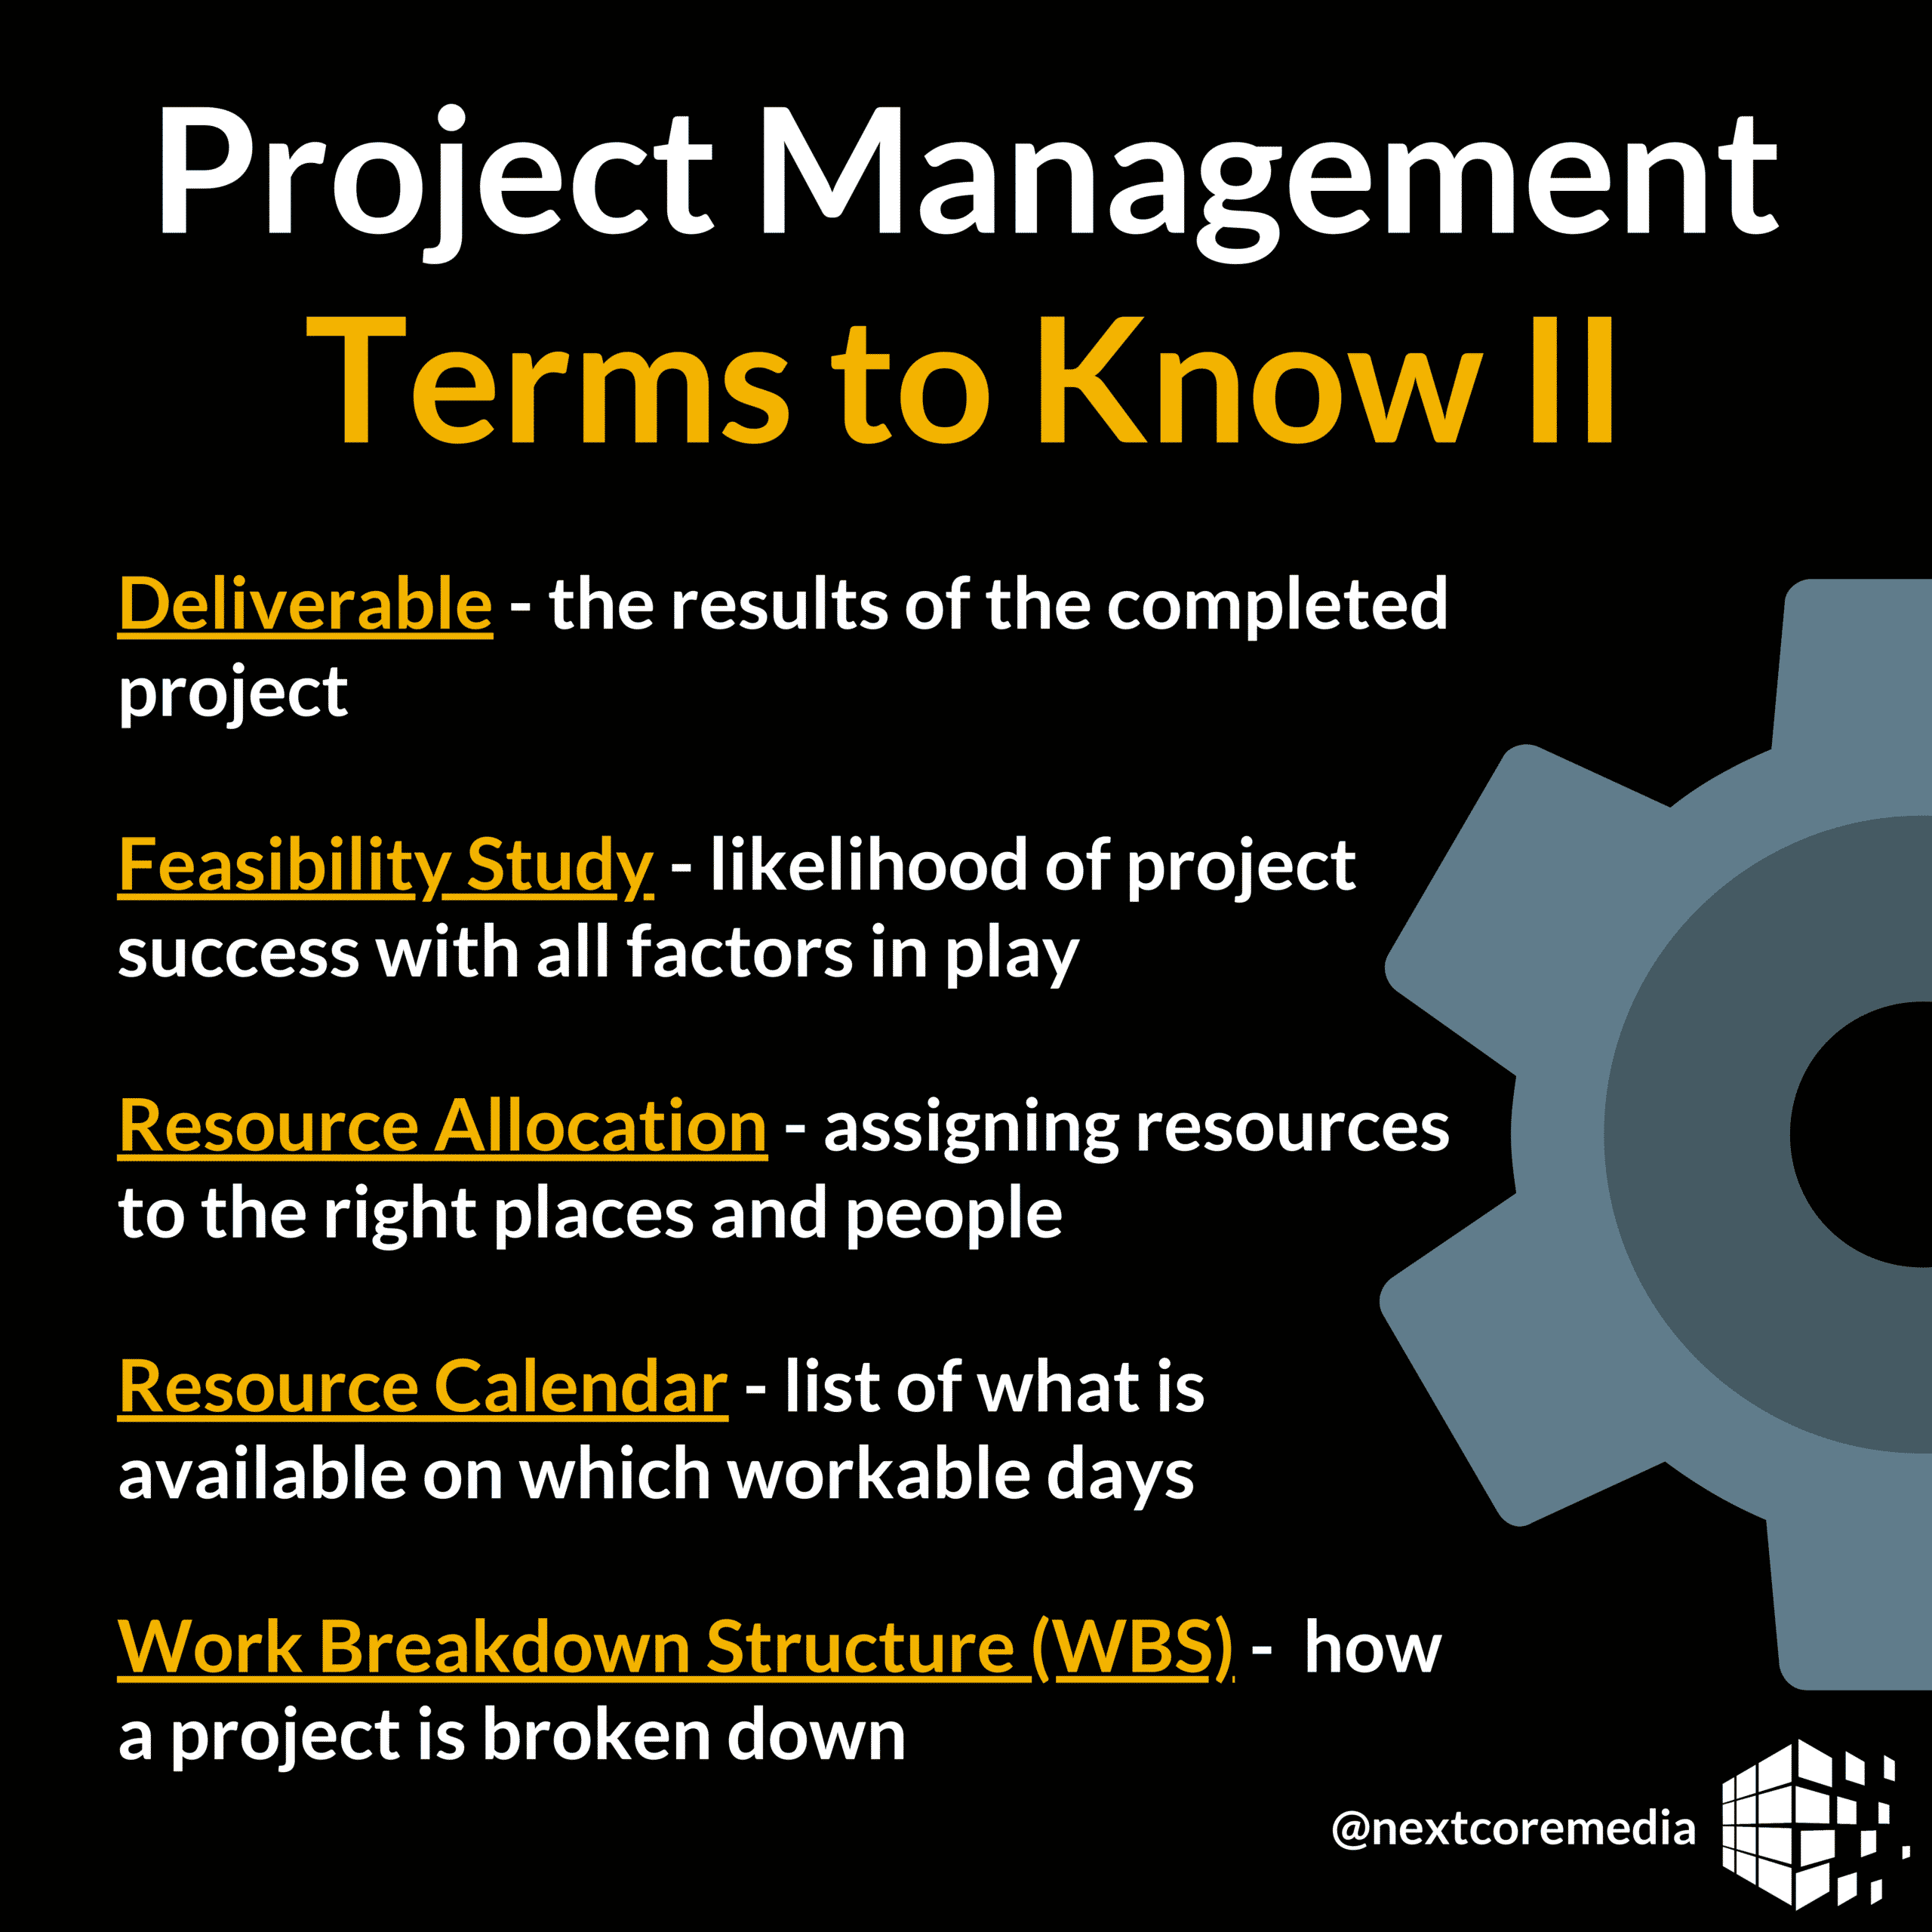 ProjectManagement2